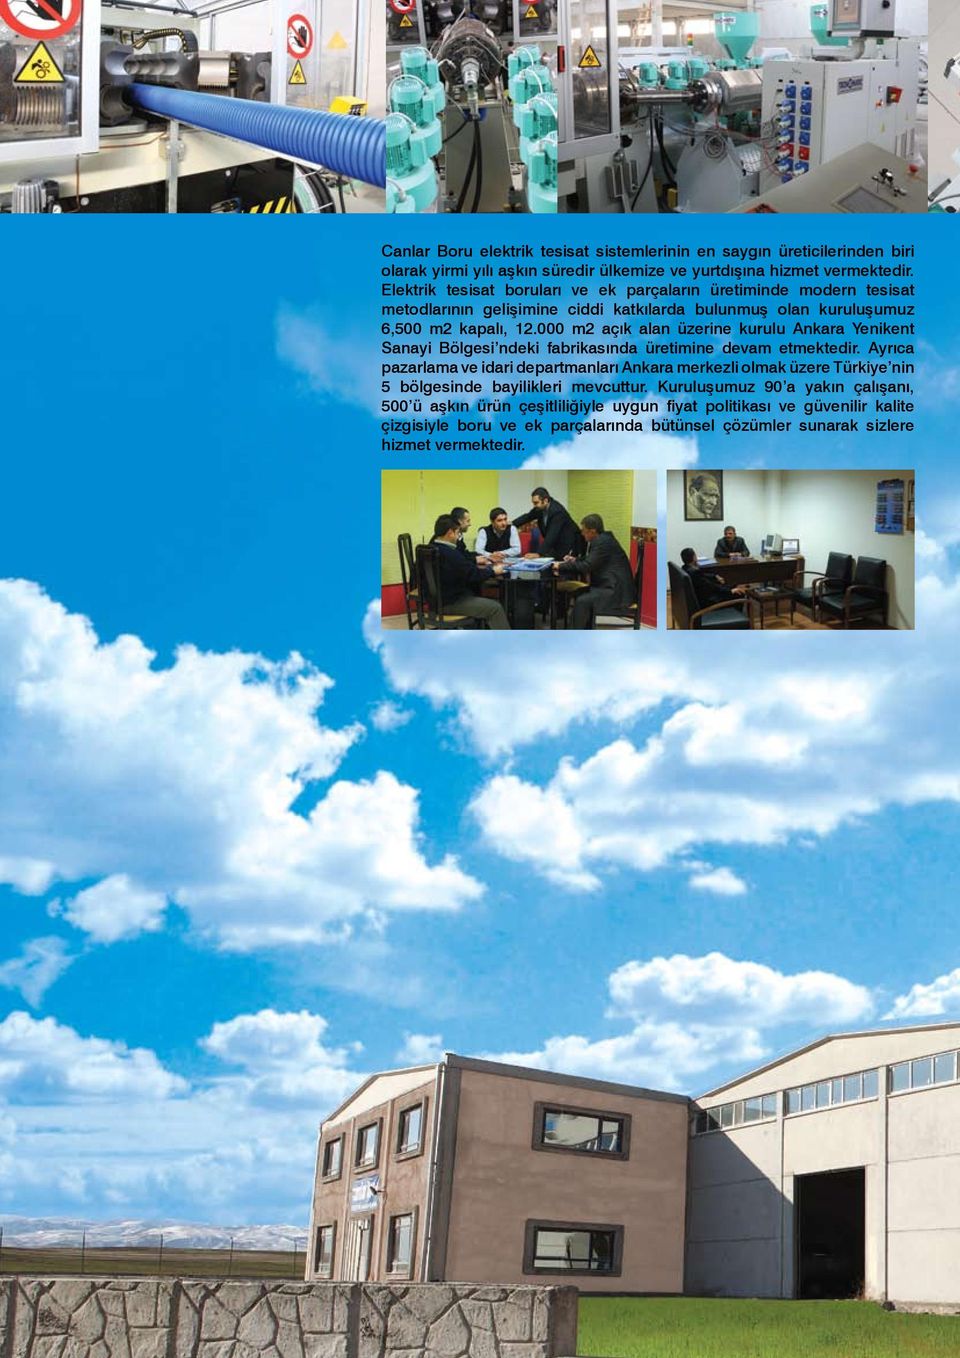 000 m2 açık alan üzerine kurulu Ankara Yenikent Sanayi Bölgesi ndeki fabrikasında üretimine devam etmektedir.